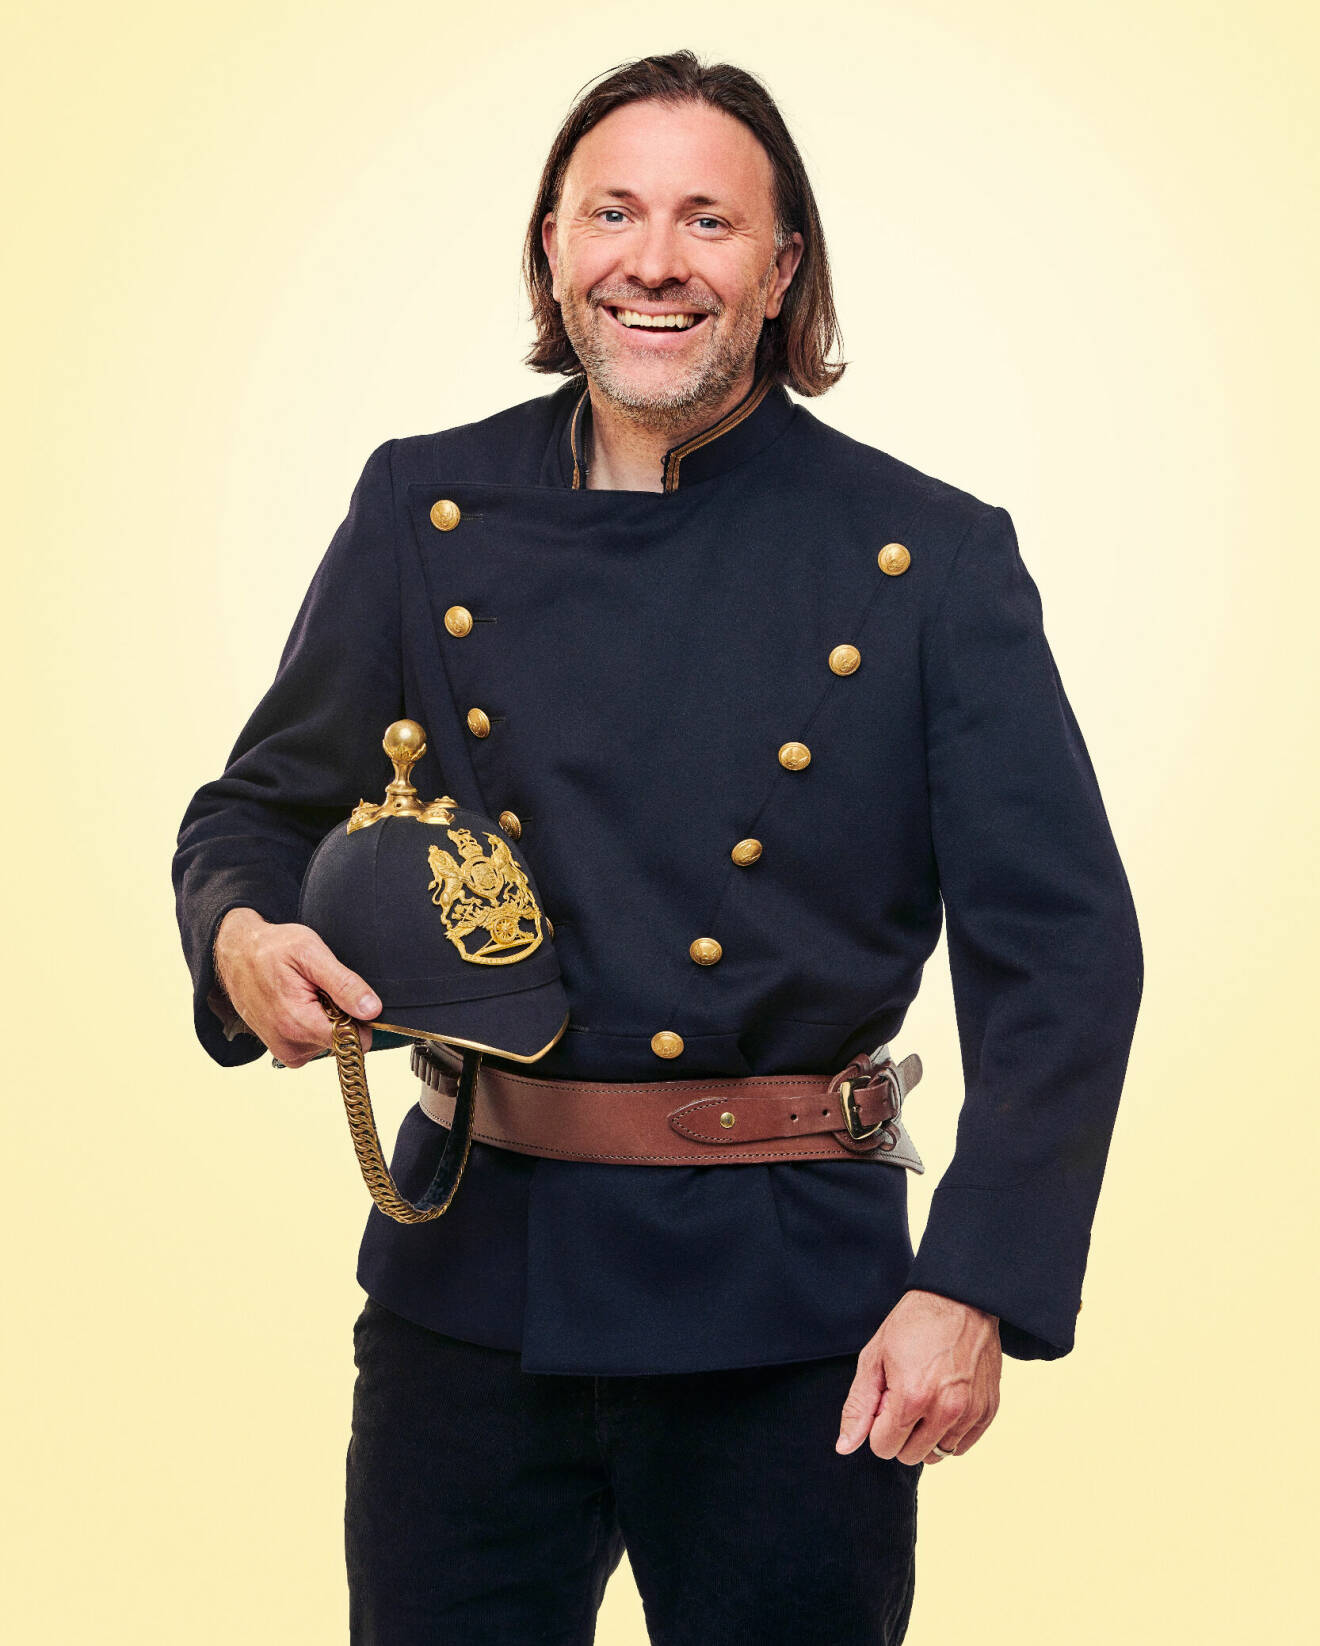 Niklas Ekstedt iklädd en gammaldags blå uniform med guldfärgade knappar och läderbälte. I ena handen håller han en tillhörande hjälm med emblem.